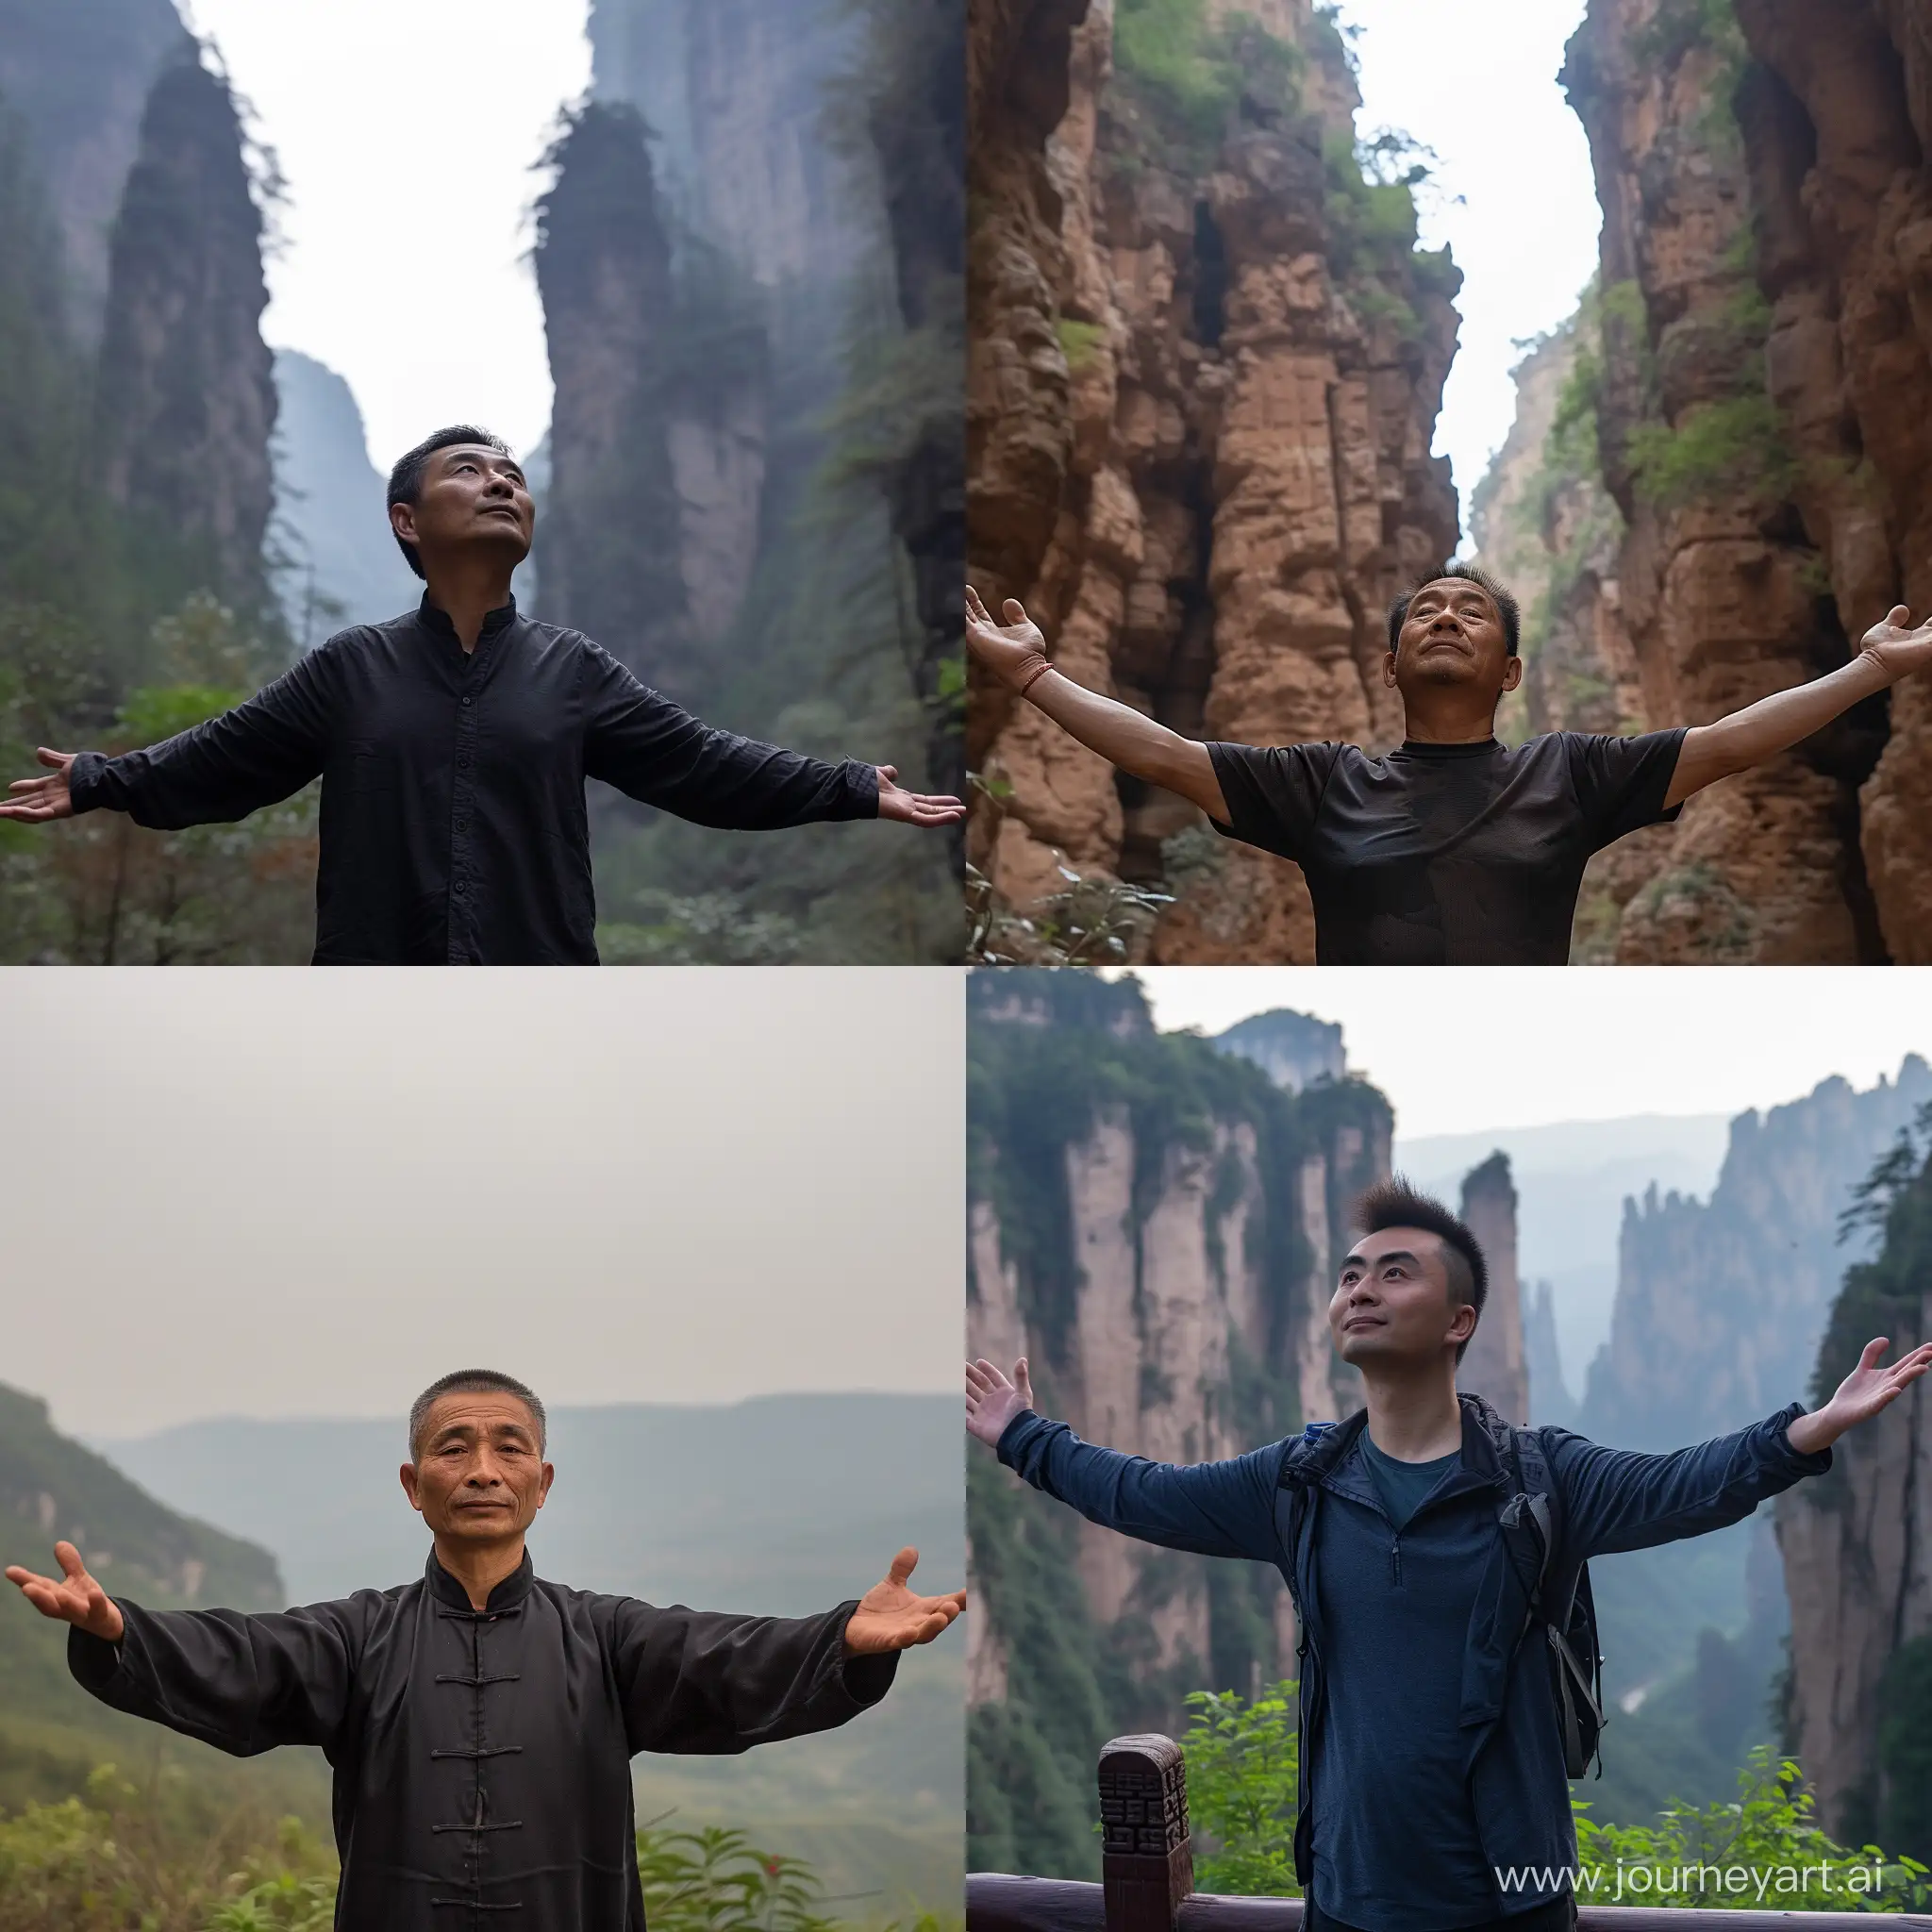 中国男性，在荔波小七孔景区，双手向两侧上方张开的背影照片